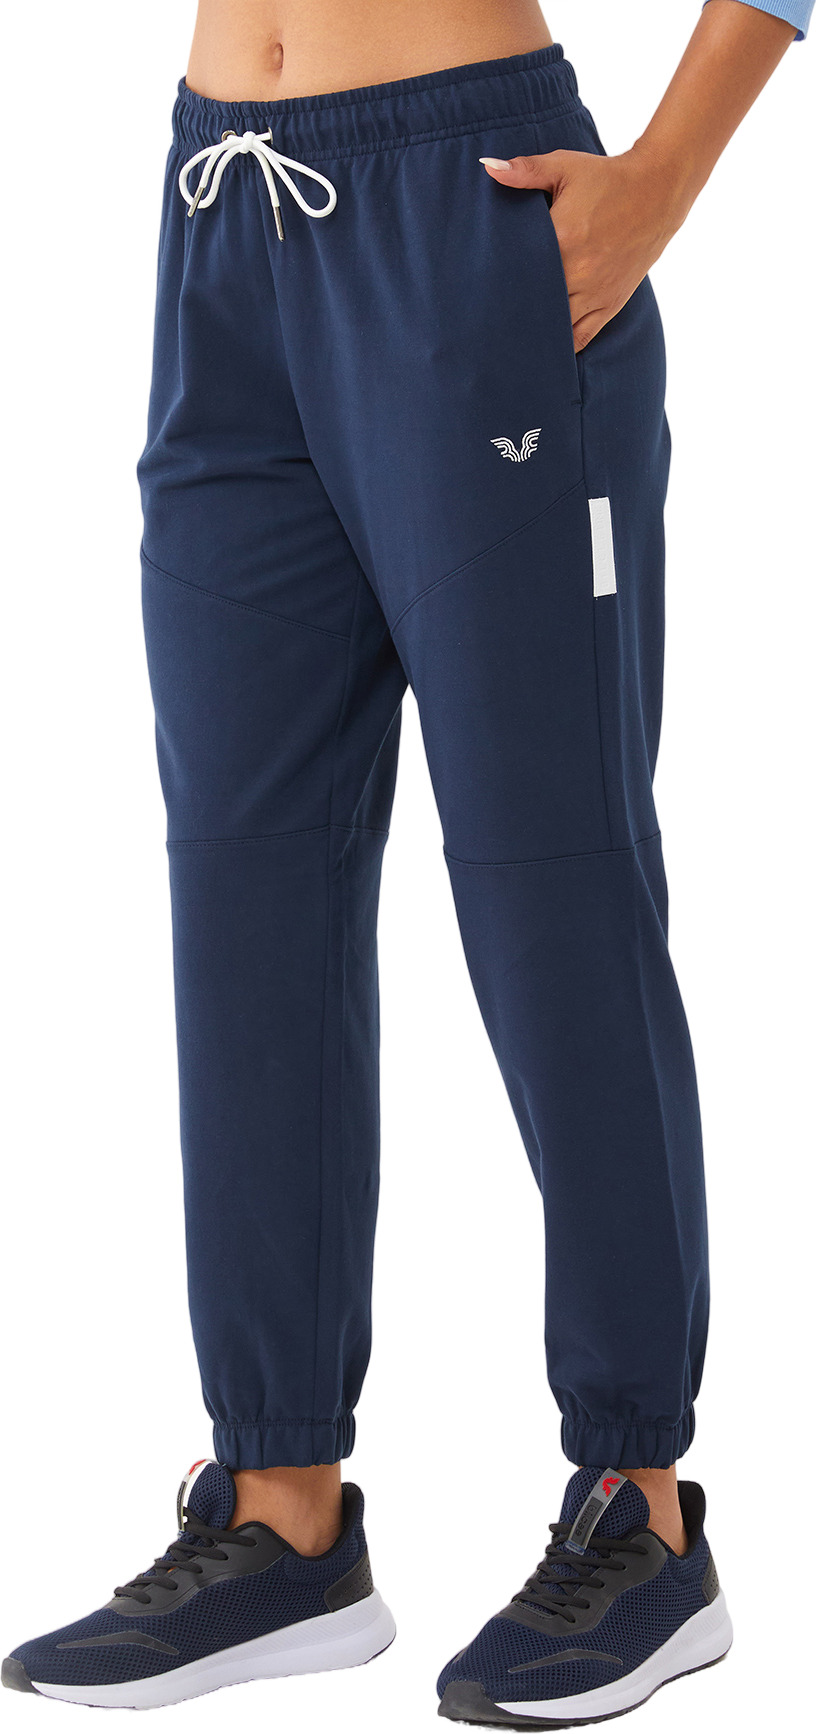 Спортивные брюки женские Bilcee Sports pants синие 2XL